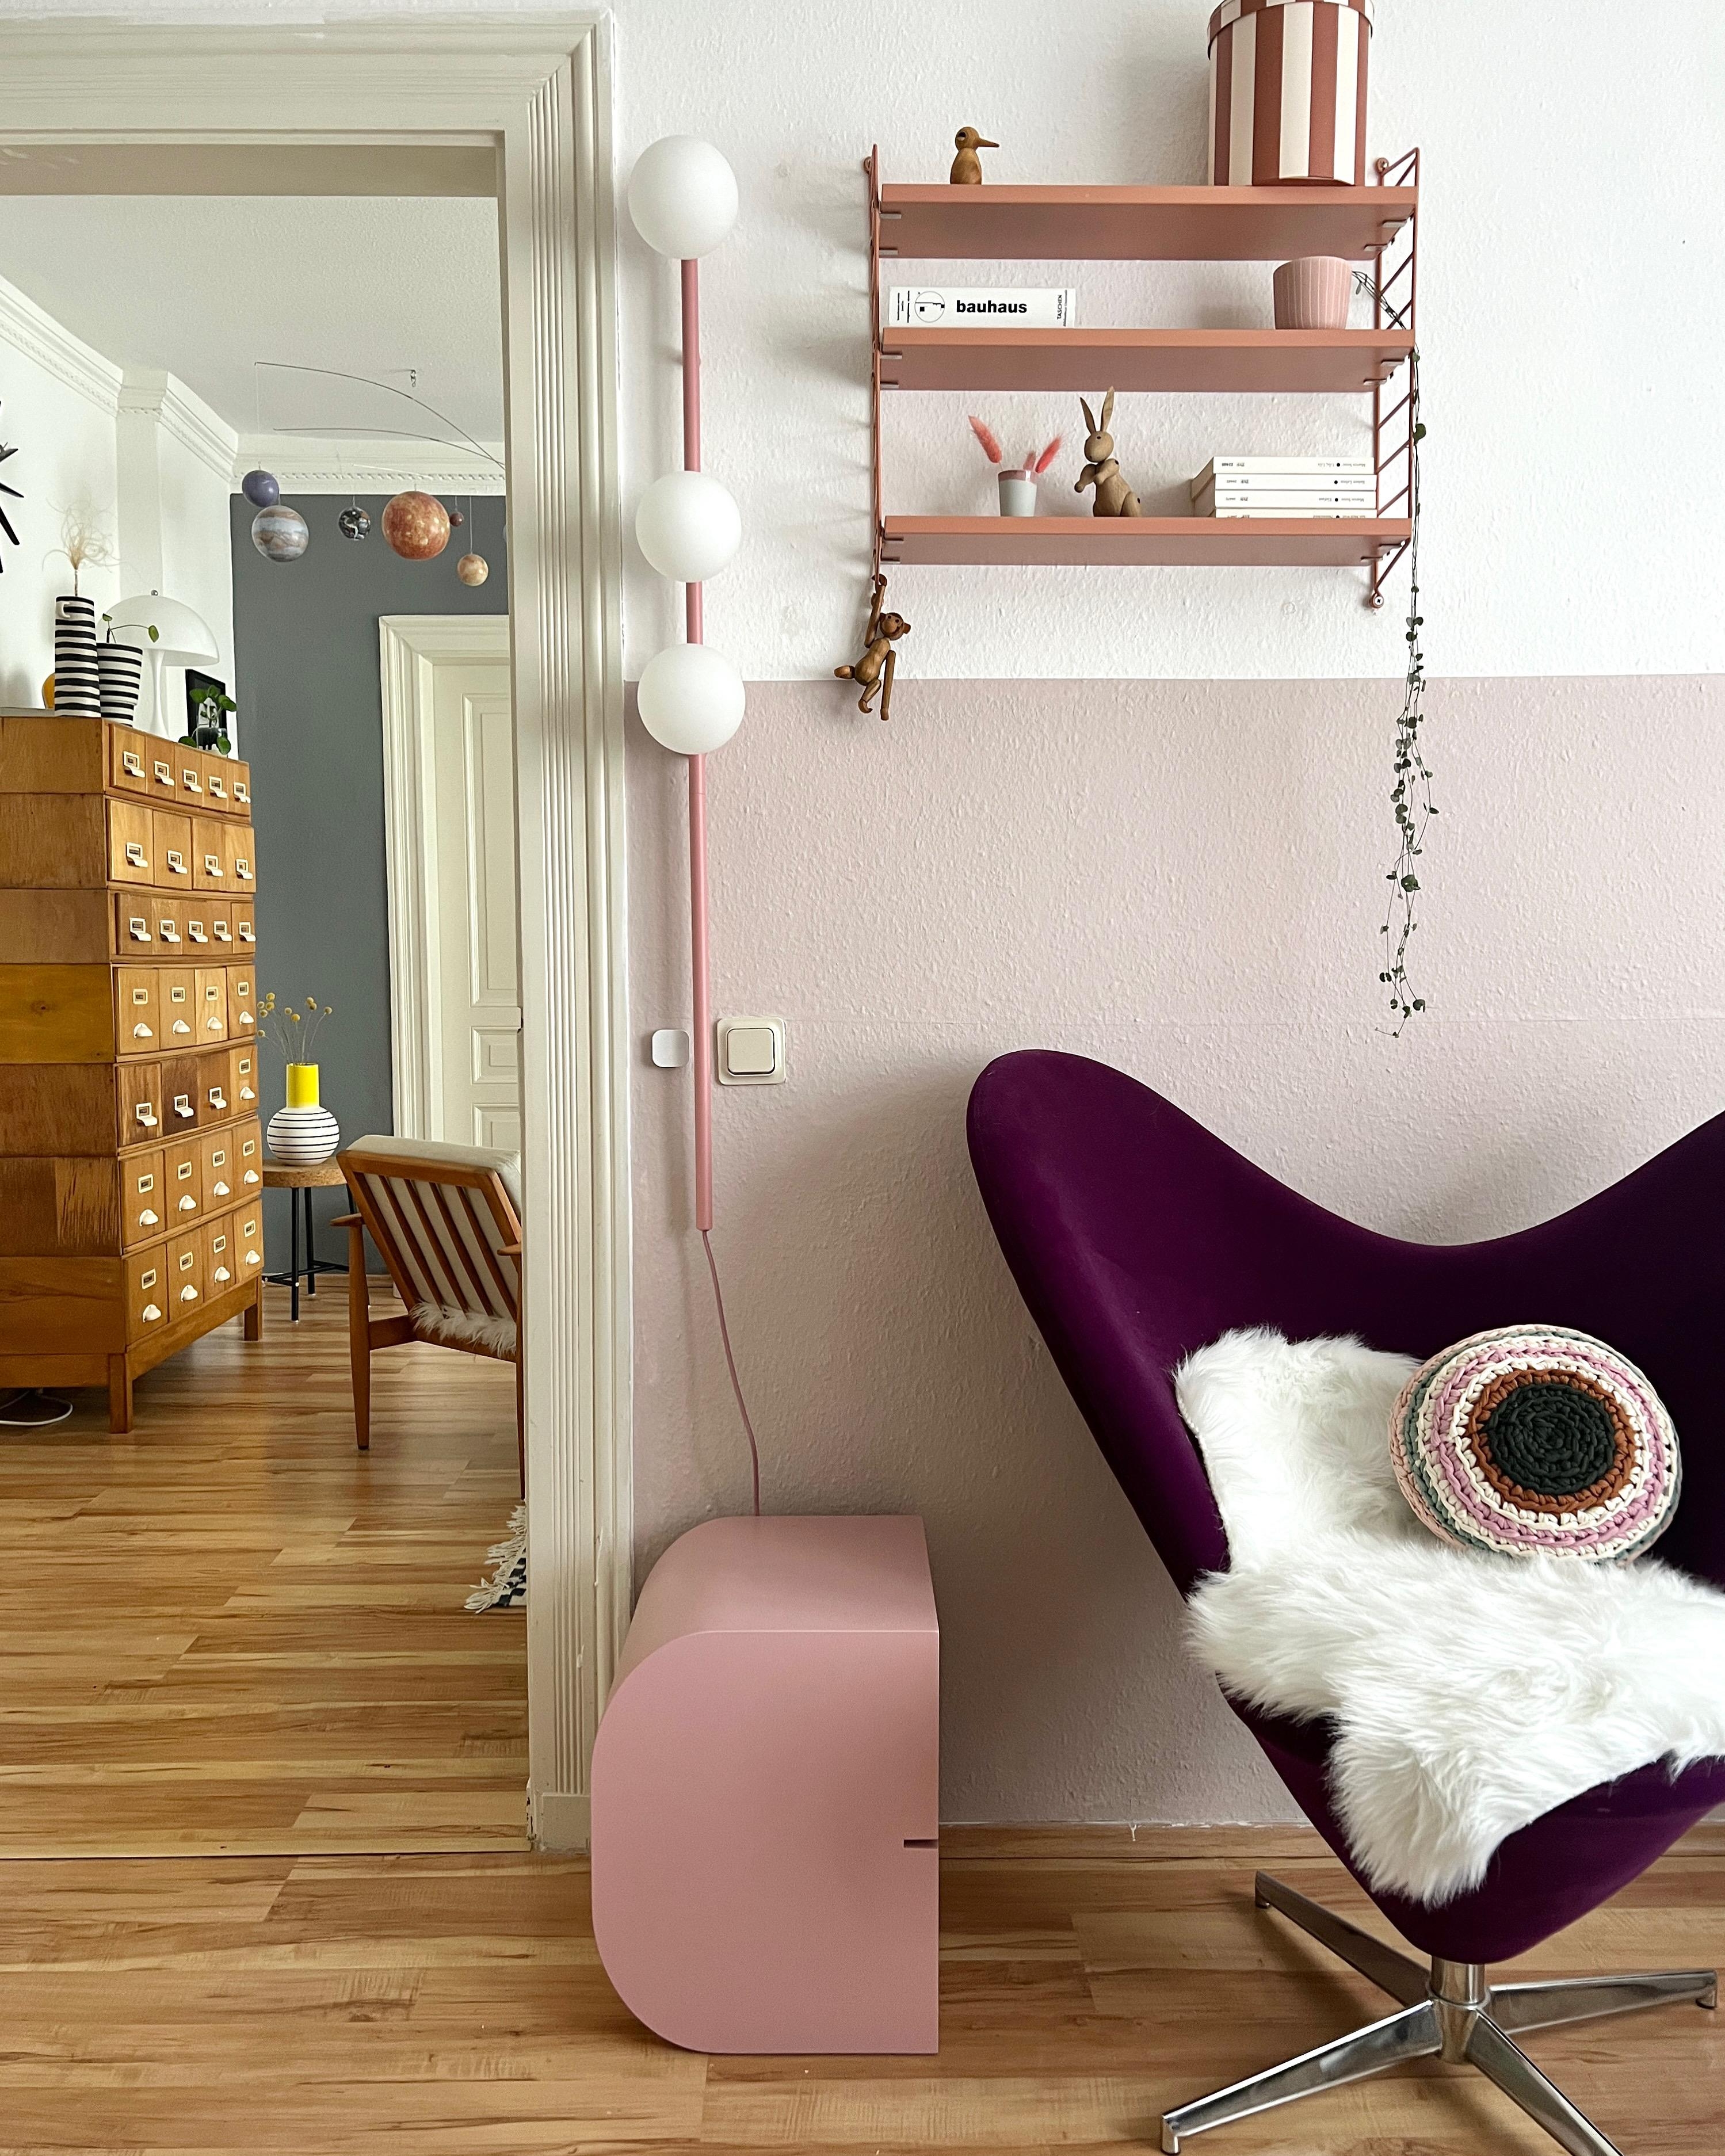 #interior #interiordesign #couchliebt #vintage #buchstabenhocker #stringregal #rosa #midcentury #panton #lumikello